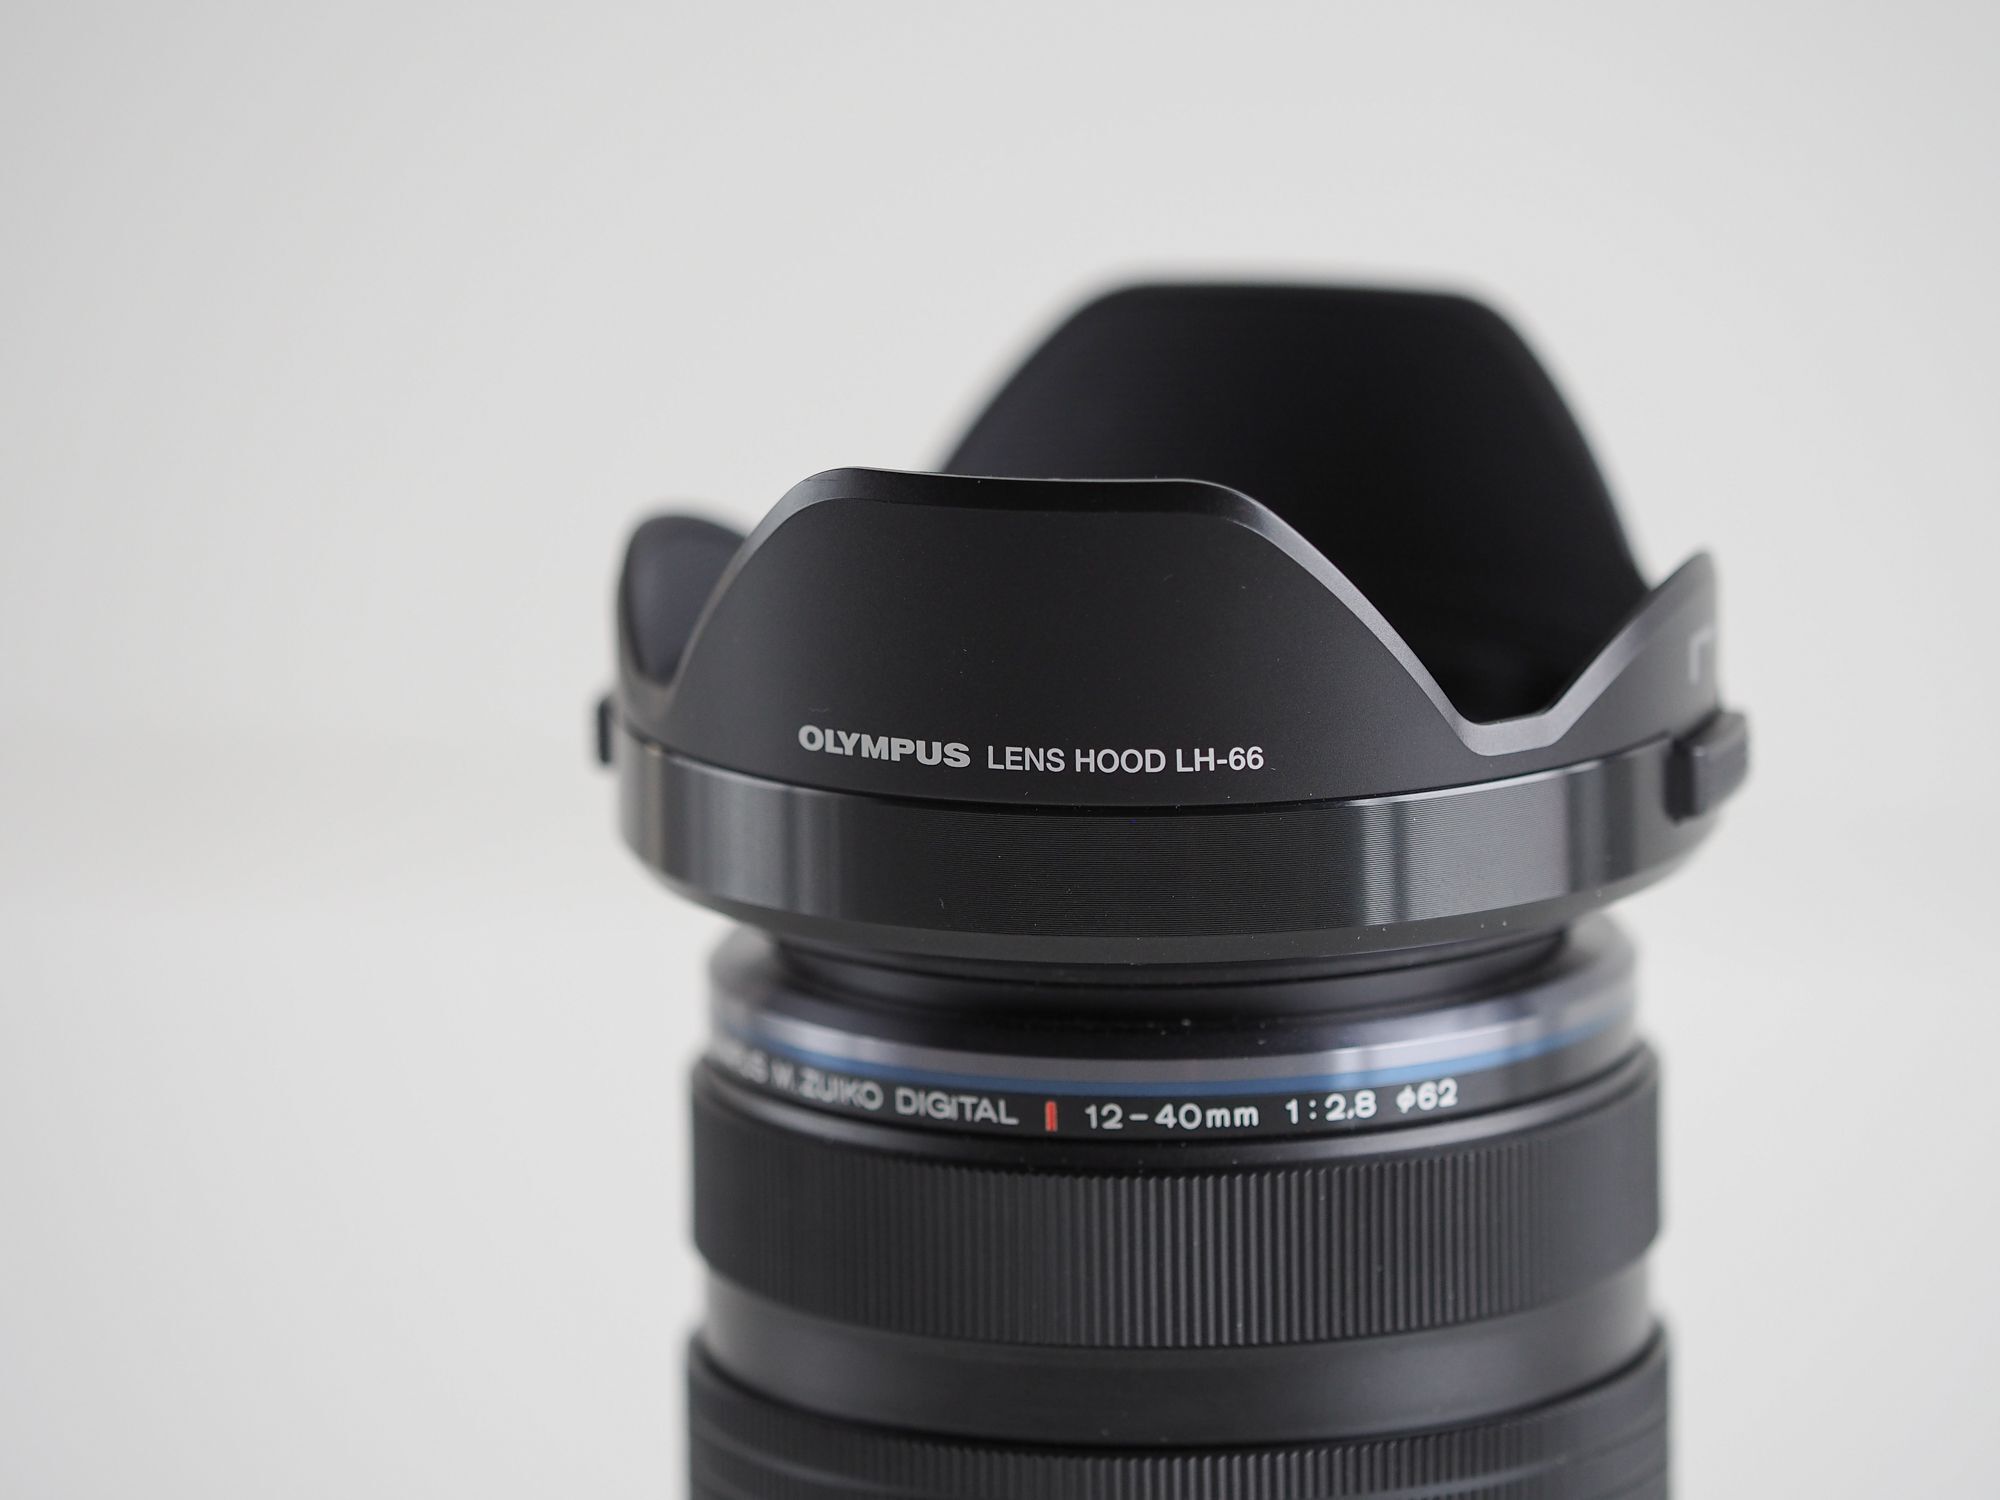 Lens hood tăng tính thẩm mỹ cho máy ảnh